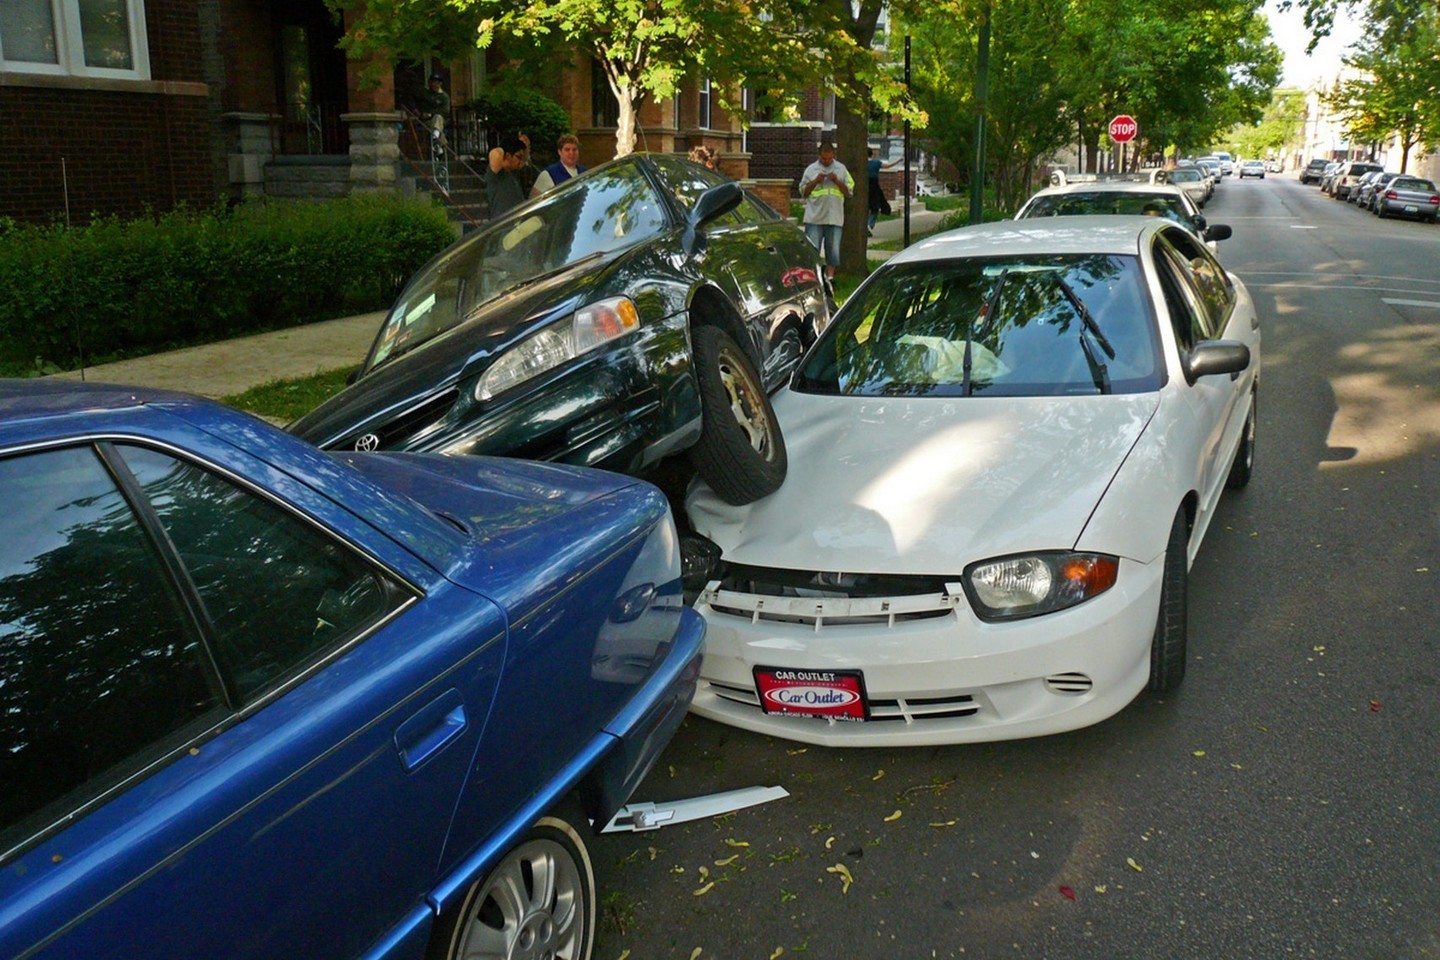 Beprotiškiausios automobilių avarijos nustebins ir visko mačiusius vairuotojus.<br>Bart Heird/Flickr.com nuotr.